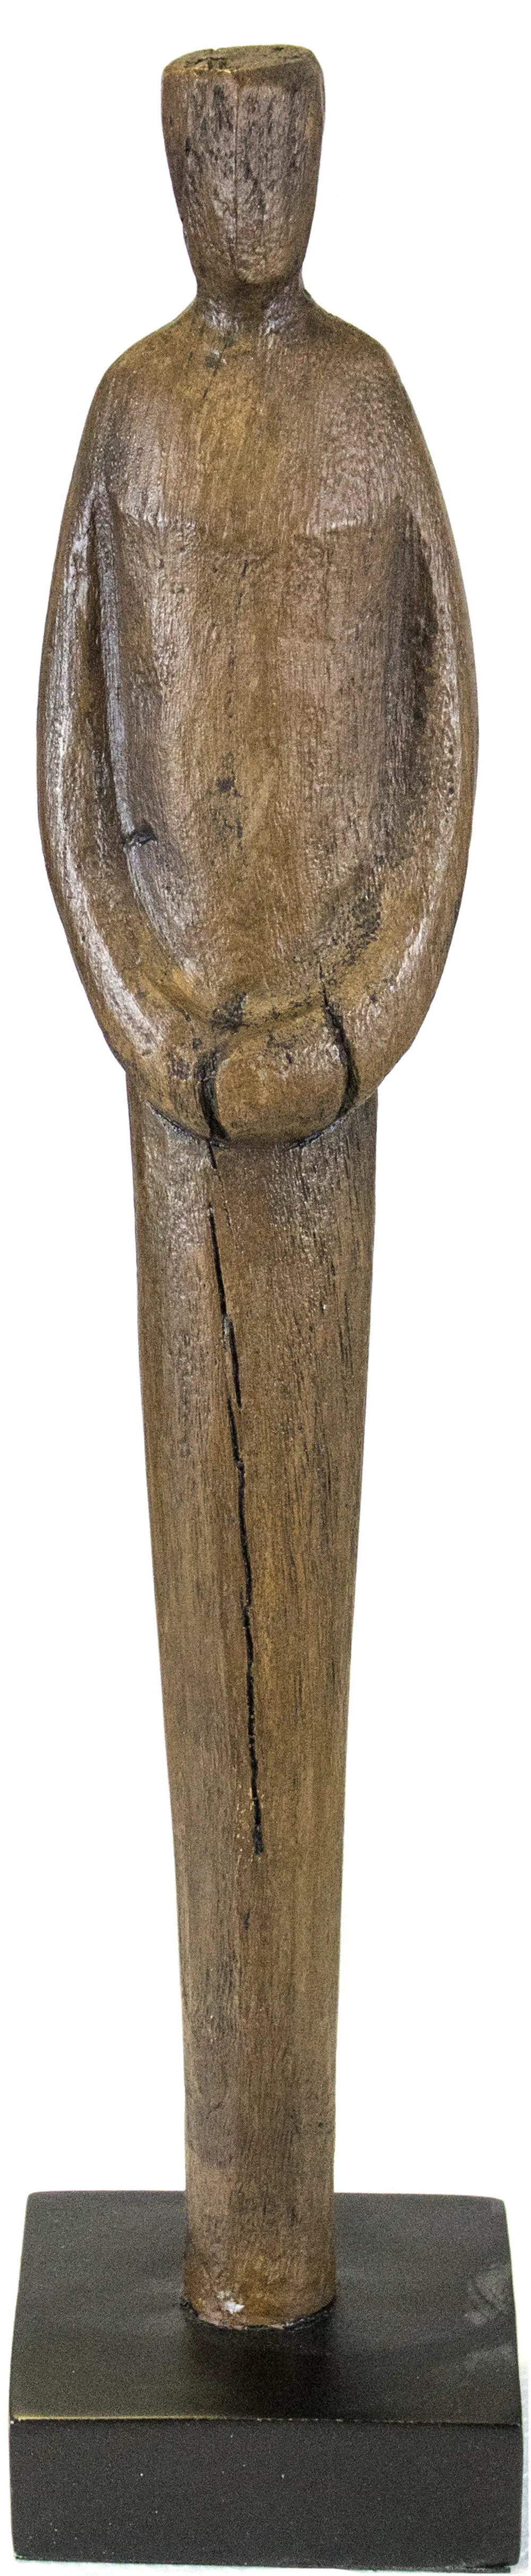 Small Brown Figurine Statue-1